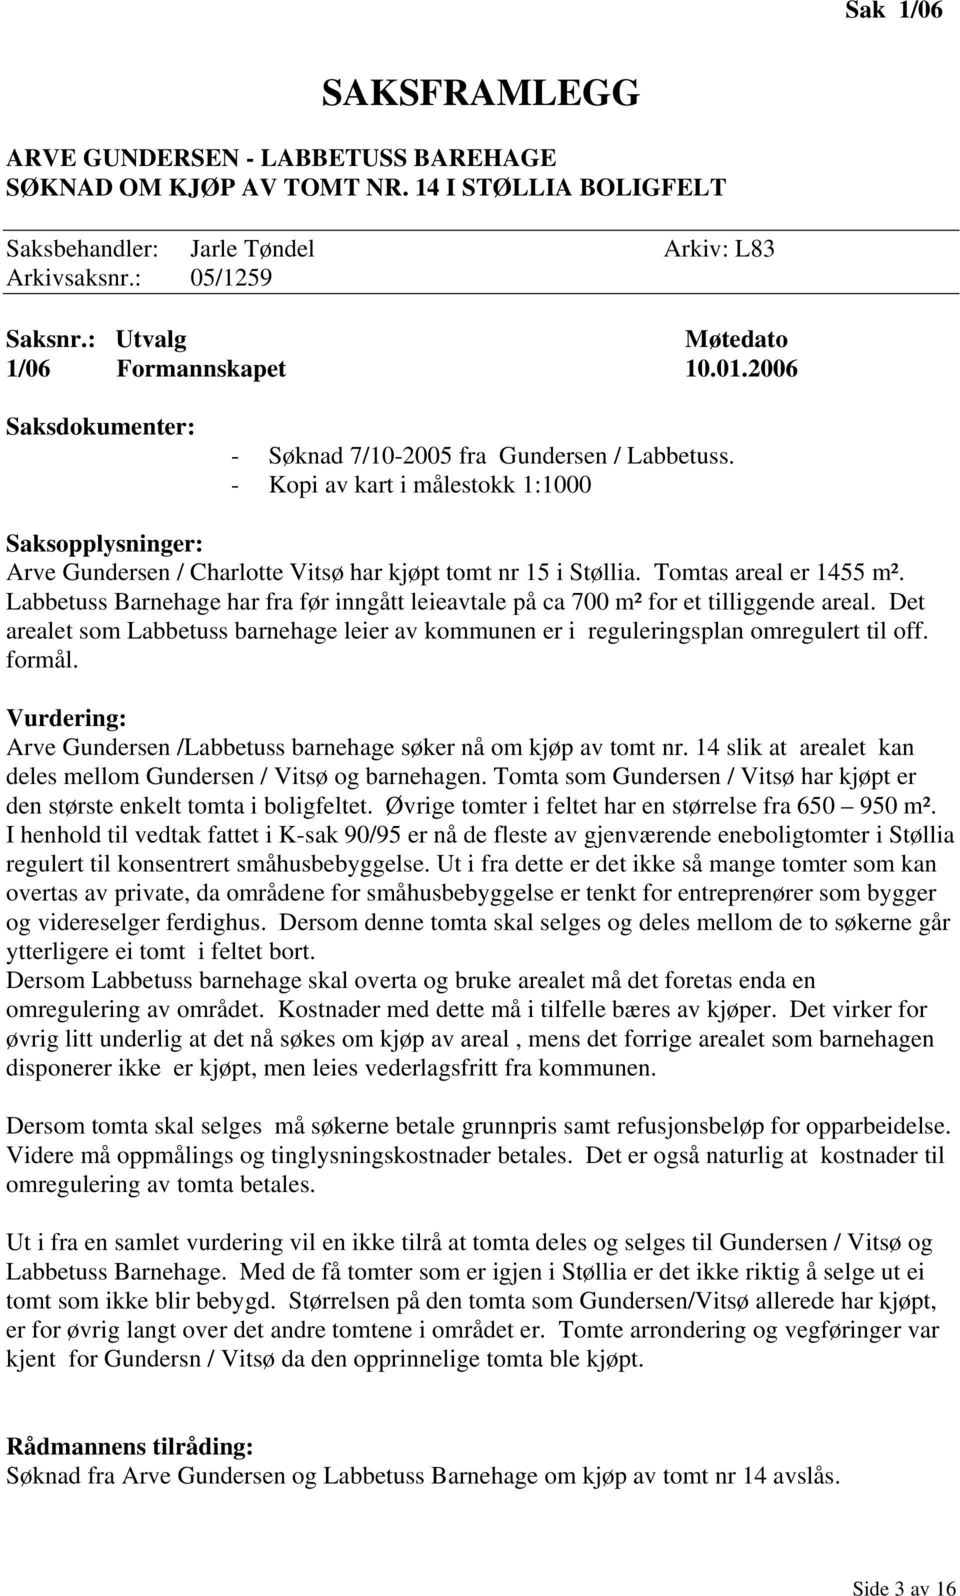 - Kopi av kart i målestokk 1:1000 Saksopplysninger: Arve Gundersen / Charlotte Vitsø har kjøpt tomt nr 15 i Støllia. Tomtas areal er 1455 m².